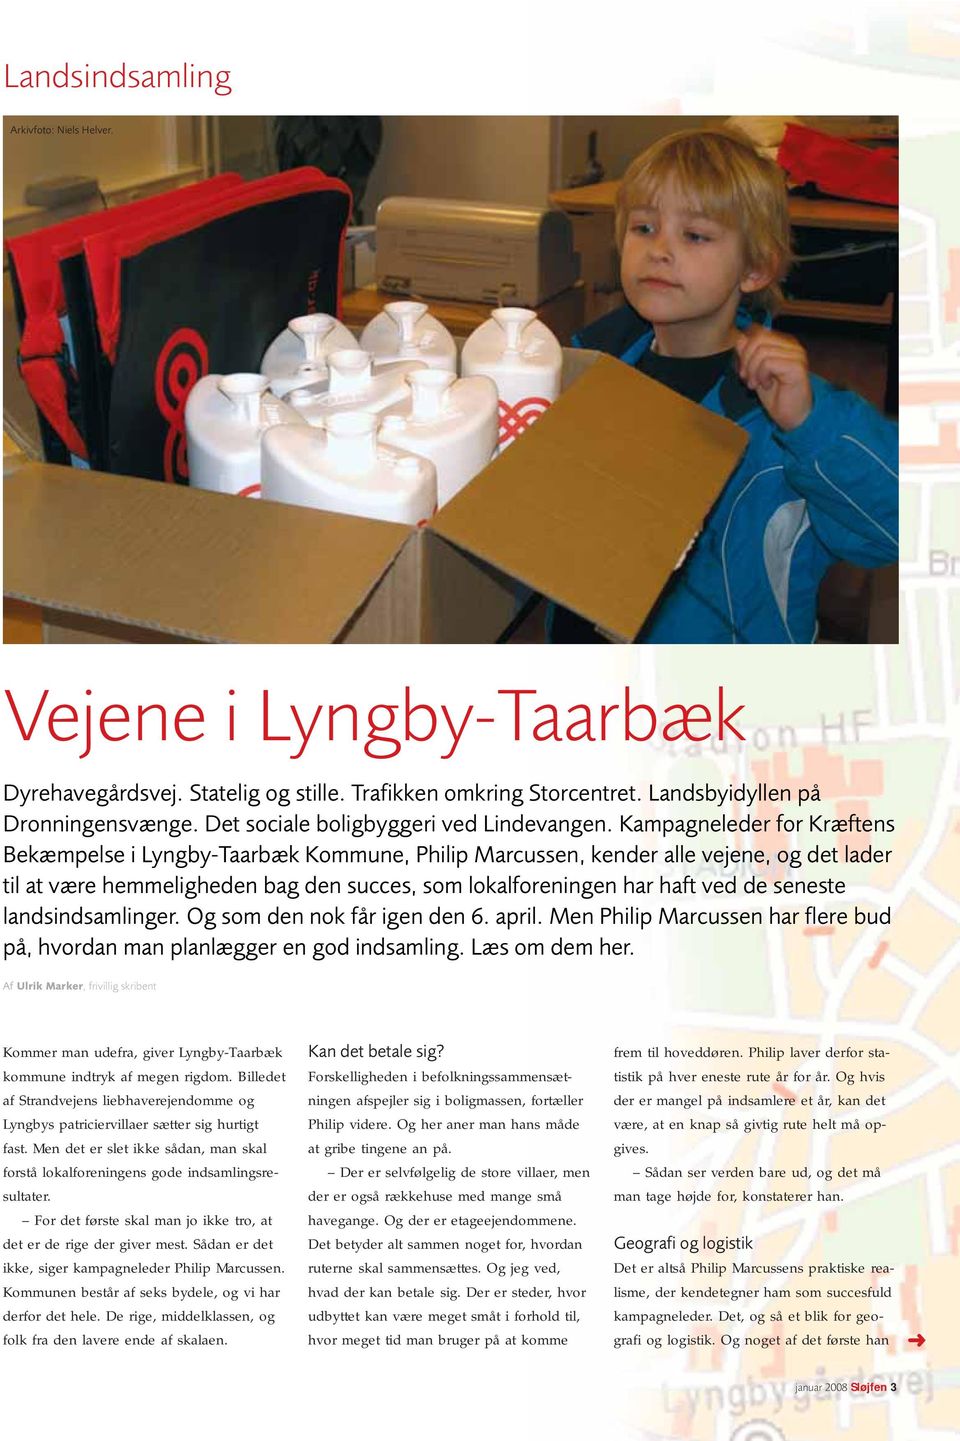 Kampagneleder for Kræftens Bekæmpelse i Lyngby-Taarbæk Kommune, Philip Marcussen, kender alle vejene, og det lader til at være hemmeligheden bag den succes, som lokalforeningen har haft ved de